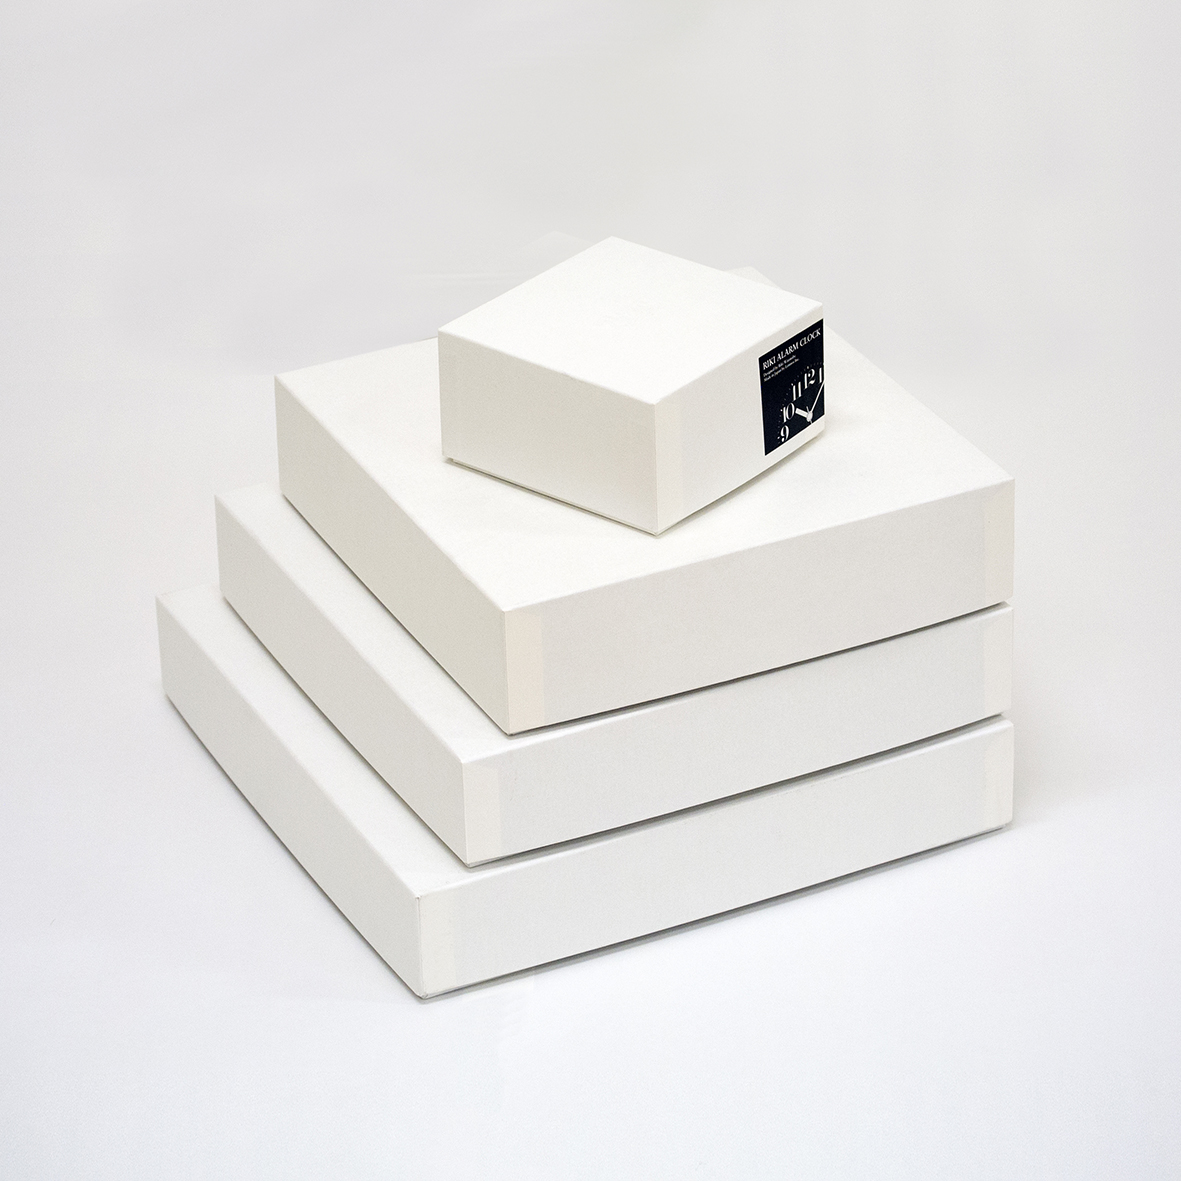 レムノスのリキクロックシリーズの個装箱が変更となります|case study shop nagoya Blog